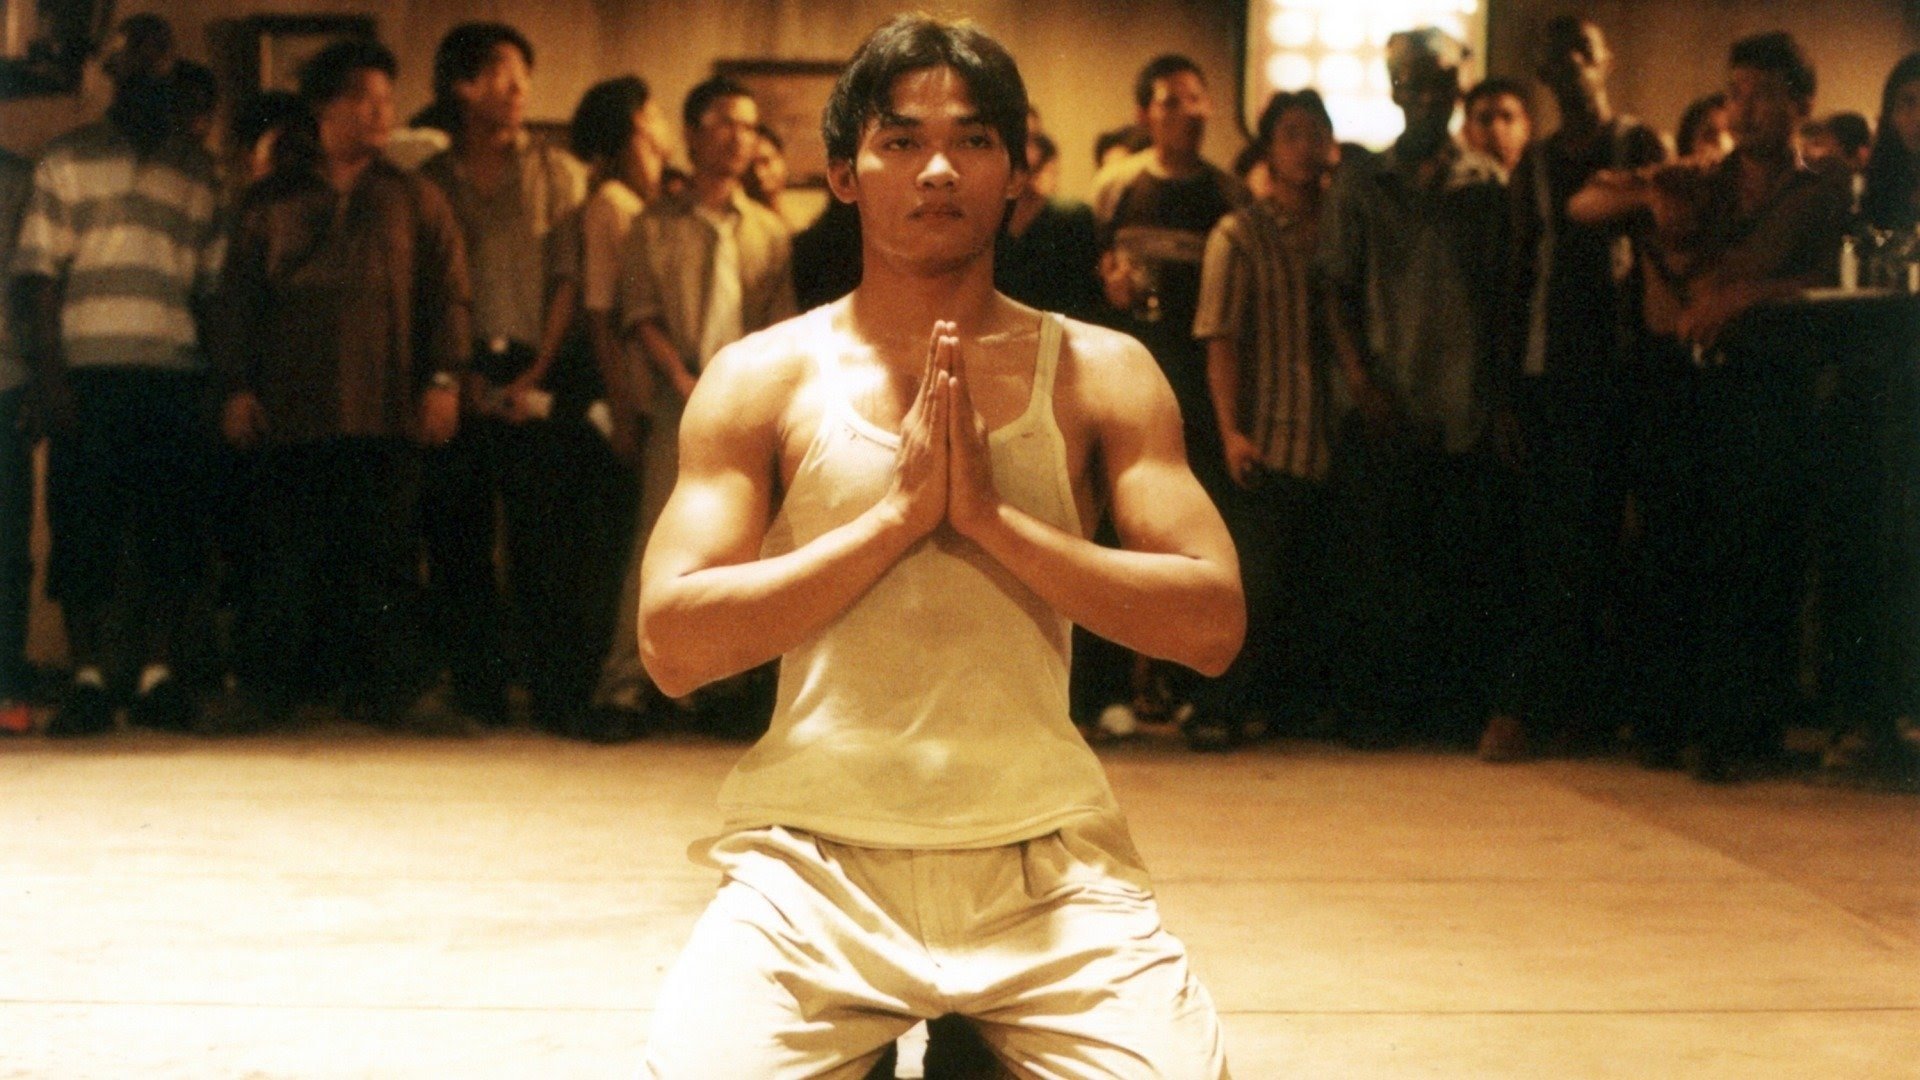 Ong-Bak (2003)